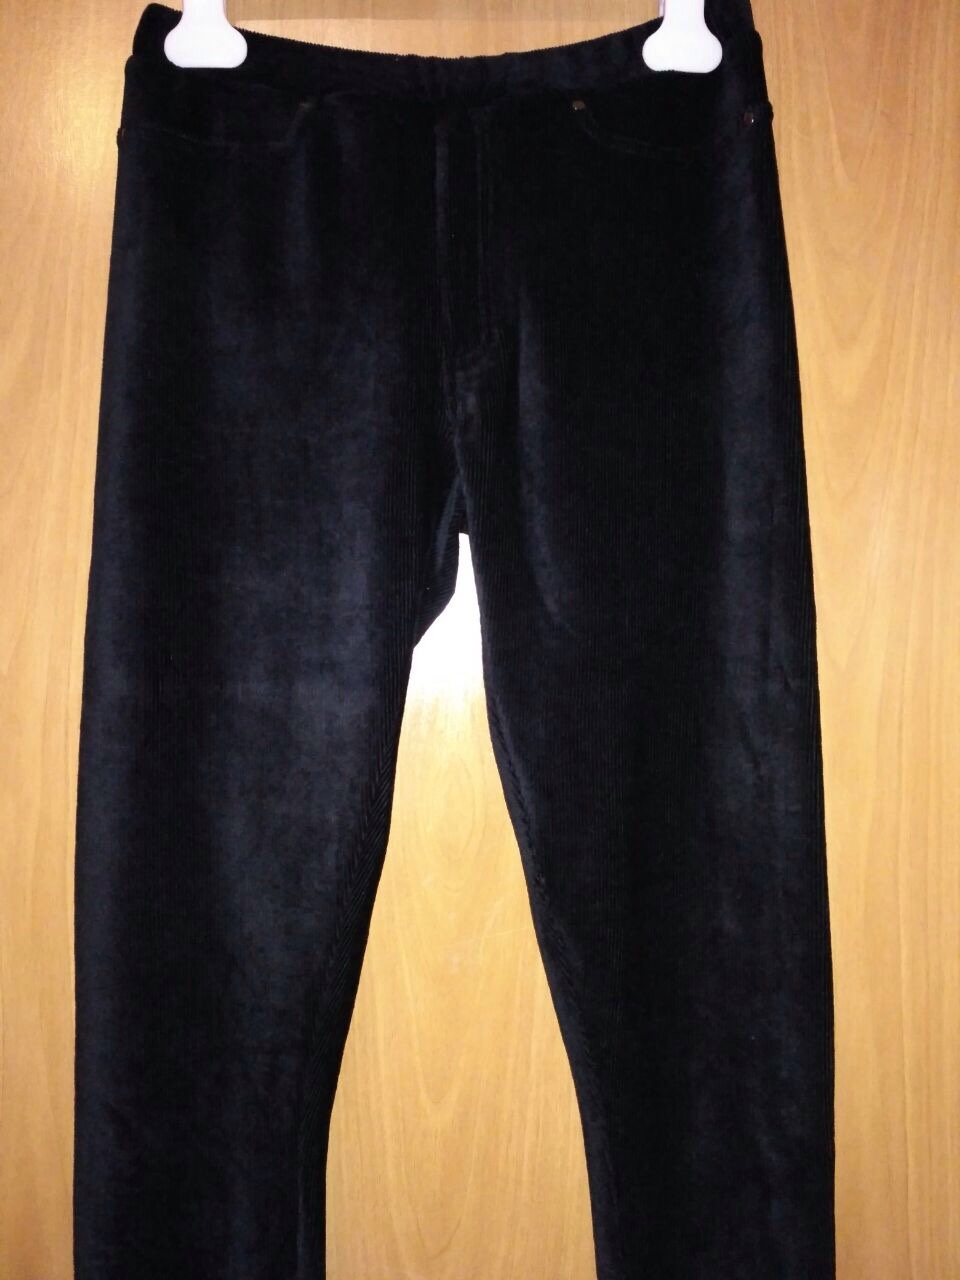 Узкие вельветовые брюки-леггинсы Tchibo, размер 44.